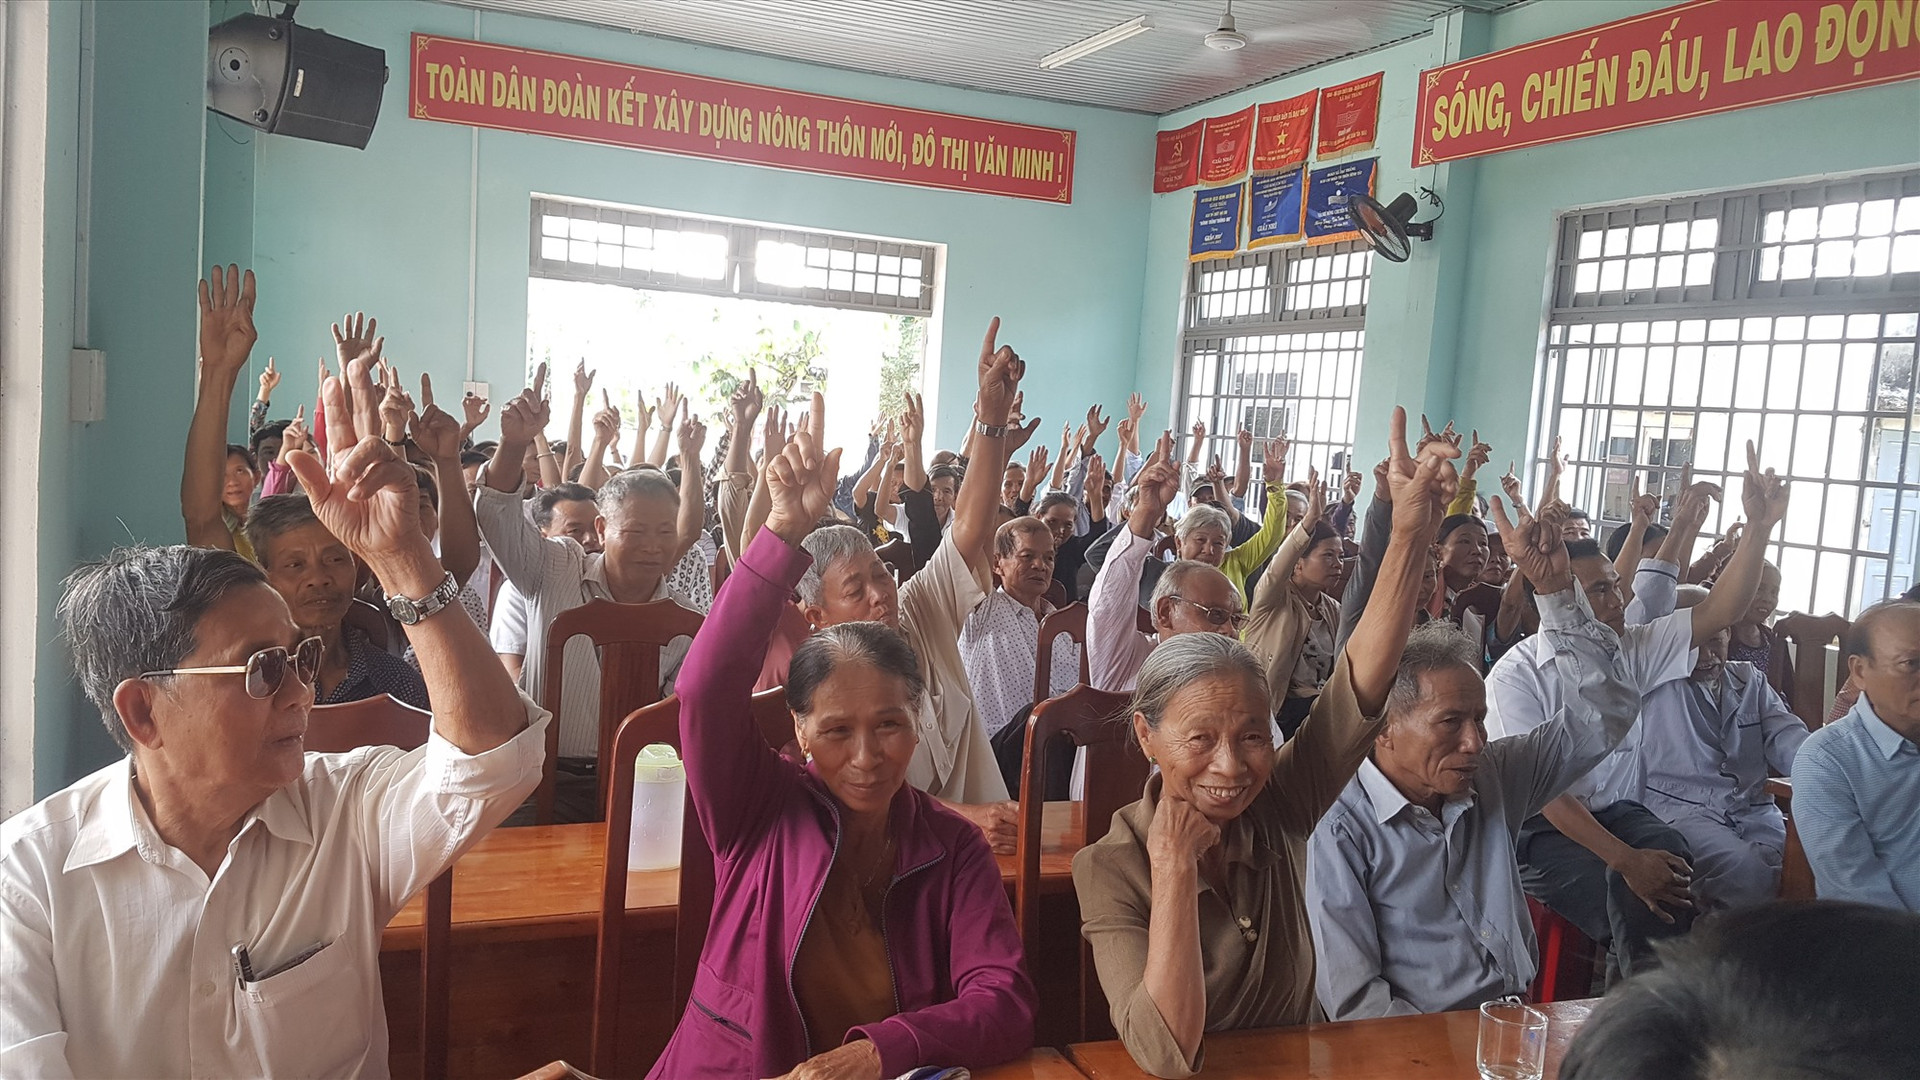 100% cử tri thôn Phú Bình đồng ý giới thiệu ông Dương Văn Phước ứng cử đại biểu Quốc hội khóa XV. Ảnh: D.L